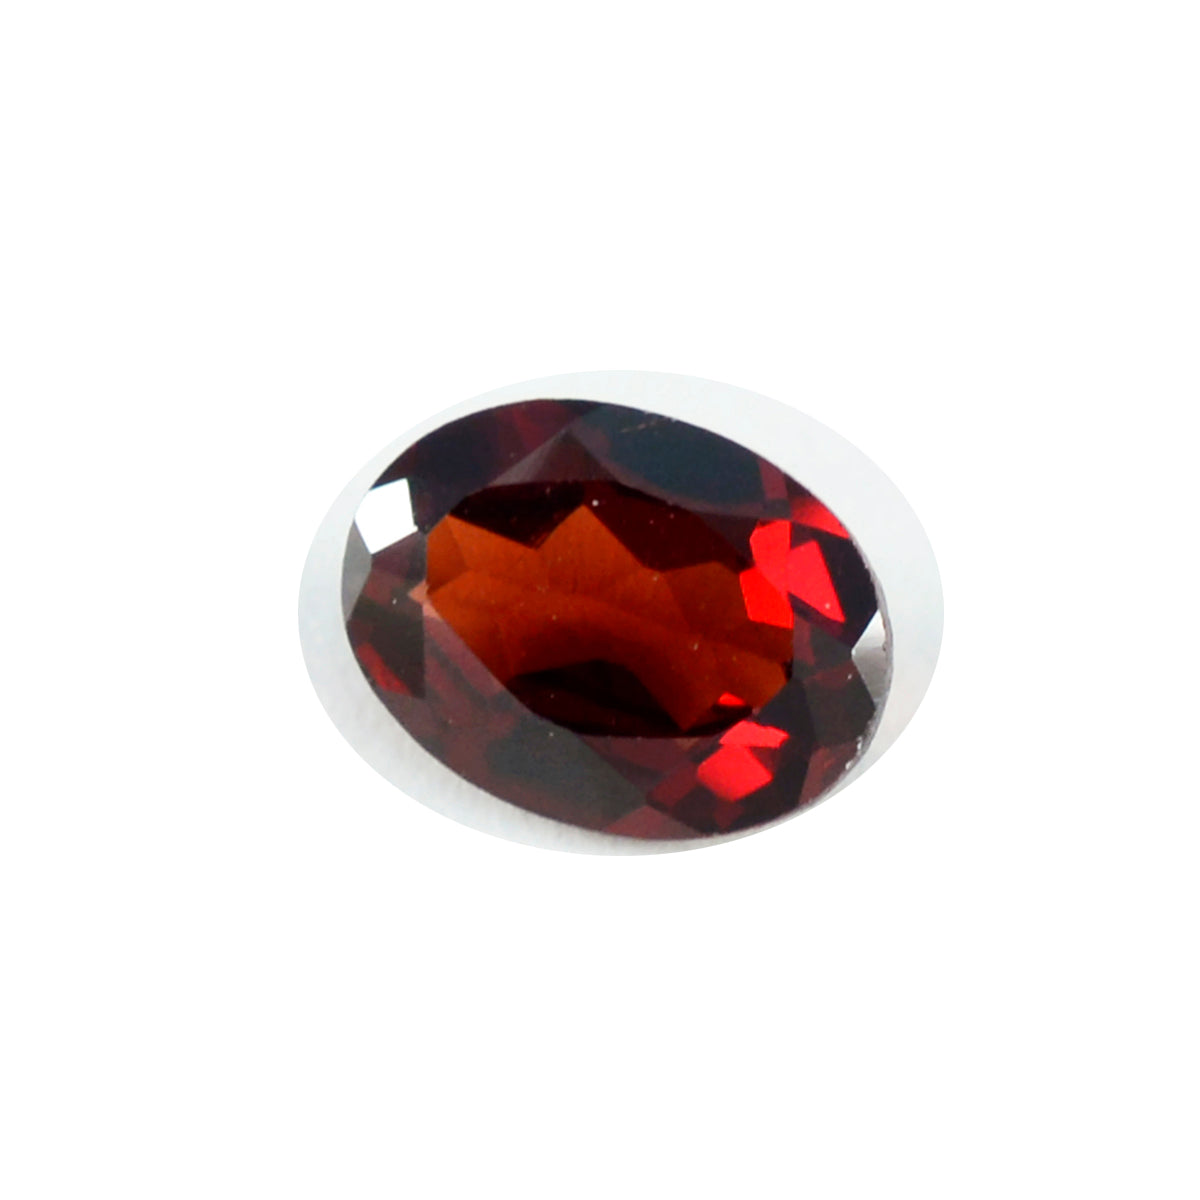 riyogems 1шт настоящий красный гранат ограненный 12x16 мм овальной формы красивый качественный драгоценный камень